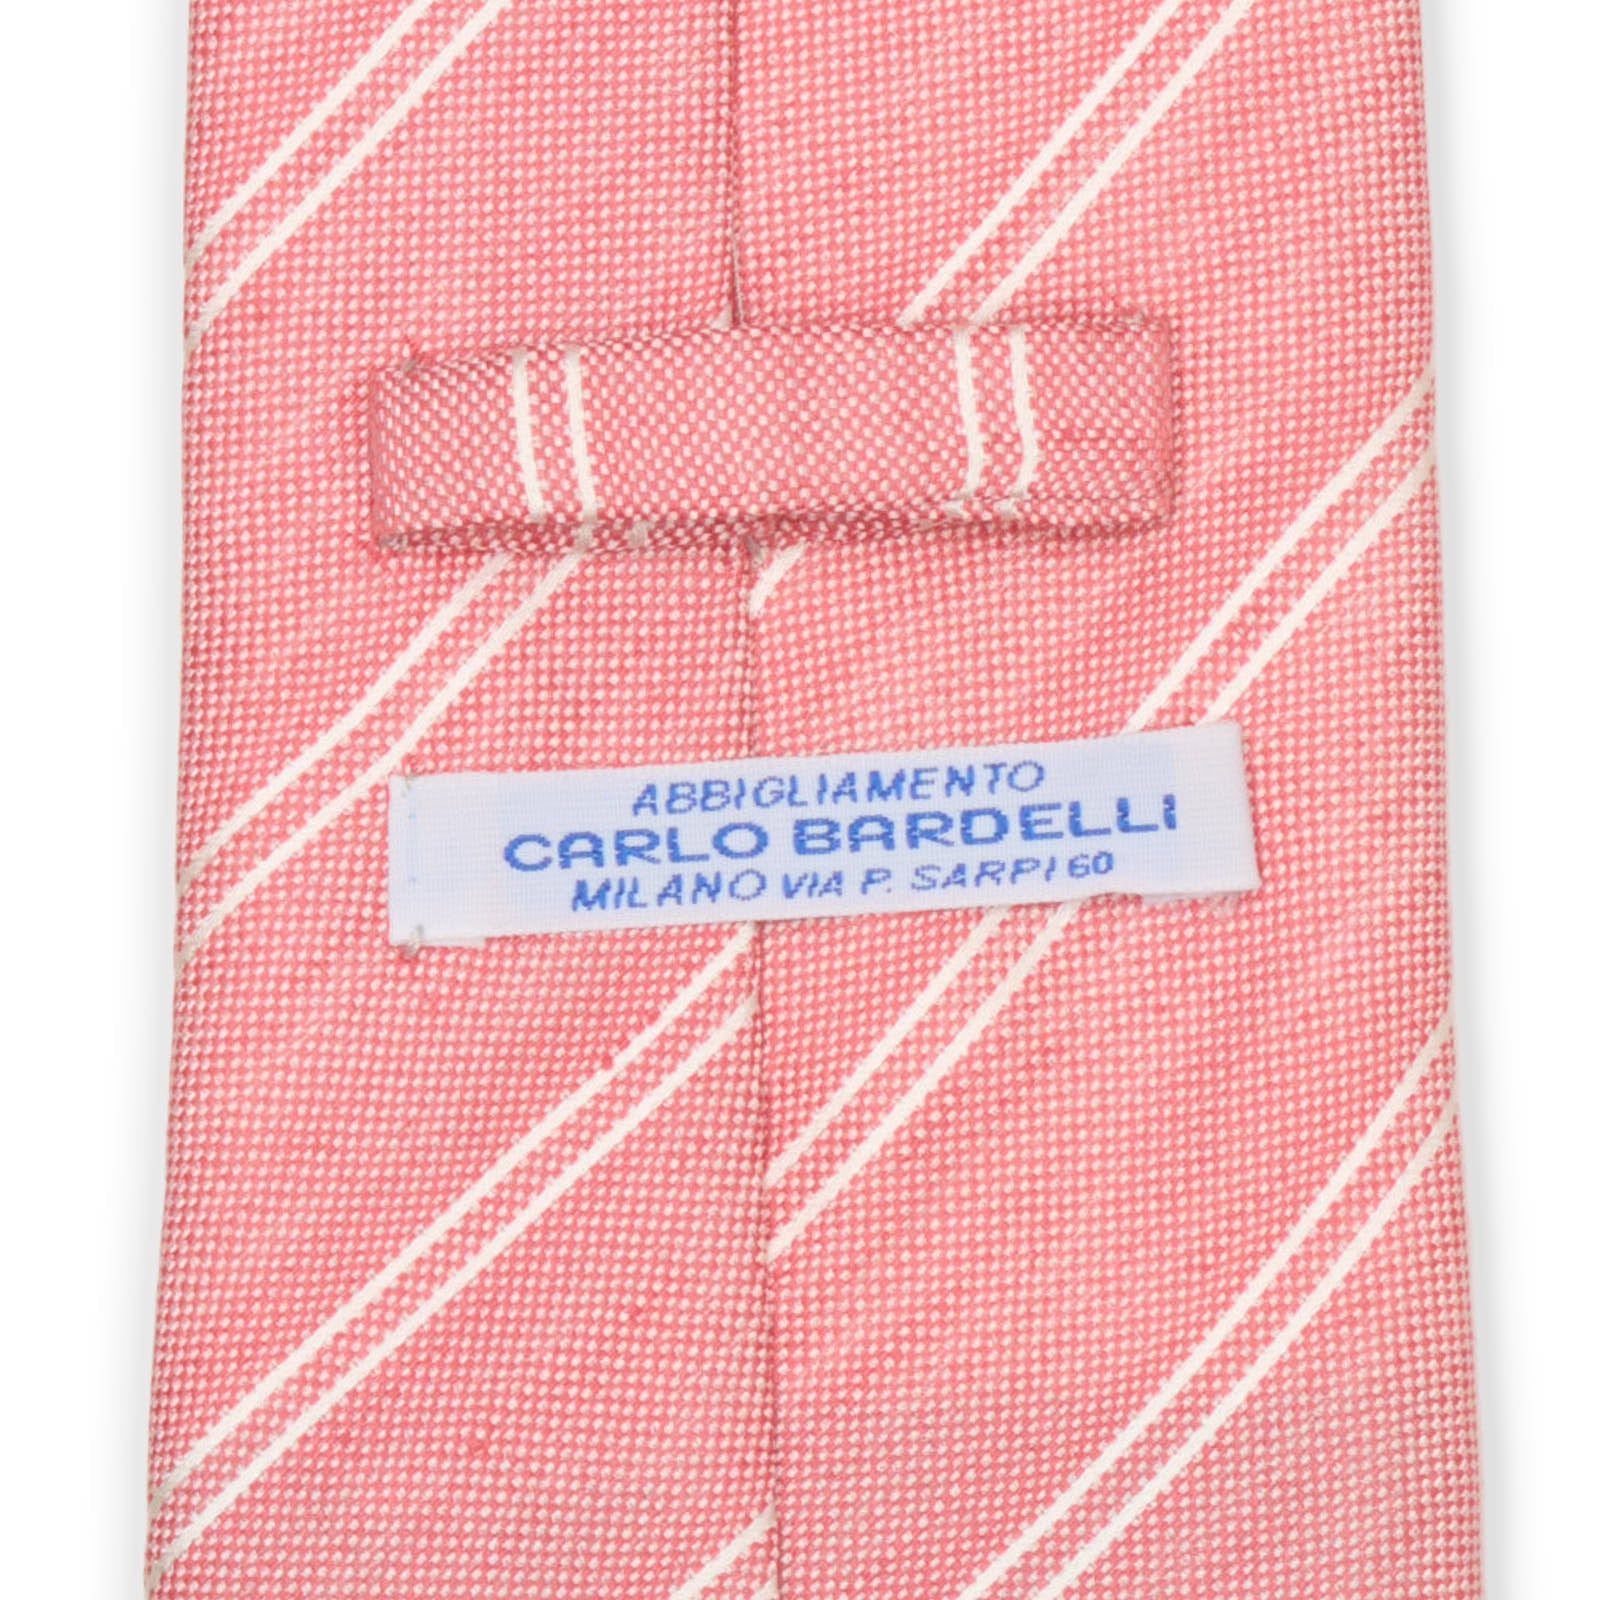 CARLO BARDELLI Pink Diagonal Striped Silk-Linen Tie NEW